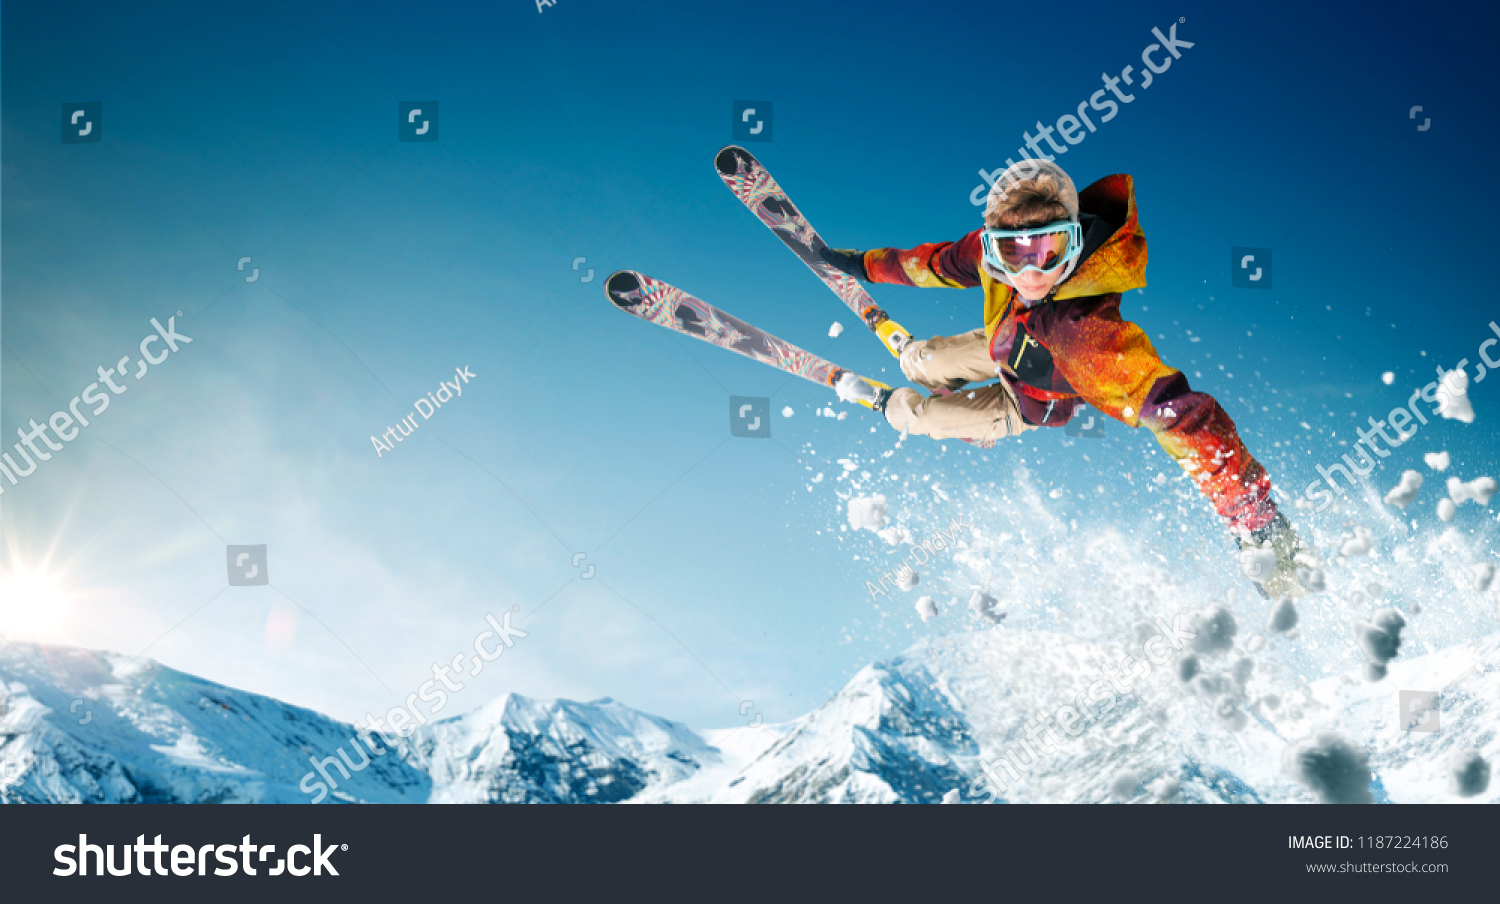 スキー ジャンプスキーヤー エクストリーム ウィンター スポーツ の写真素材 今すぐ編集